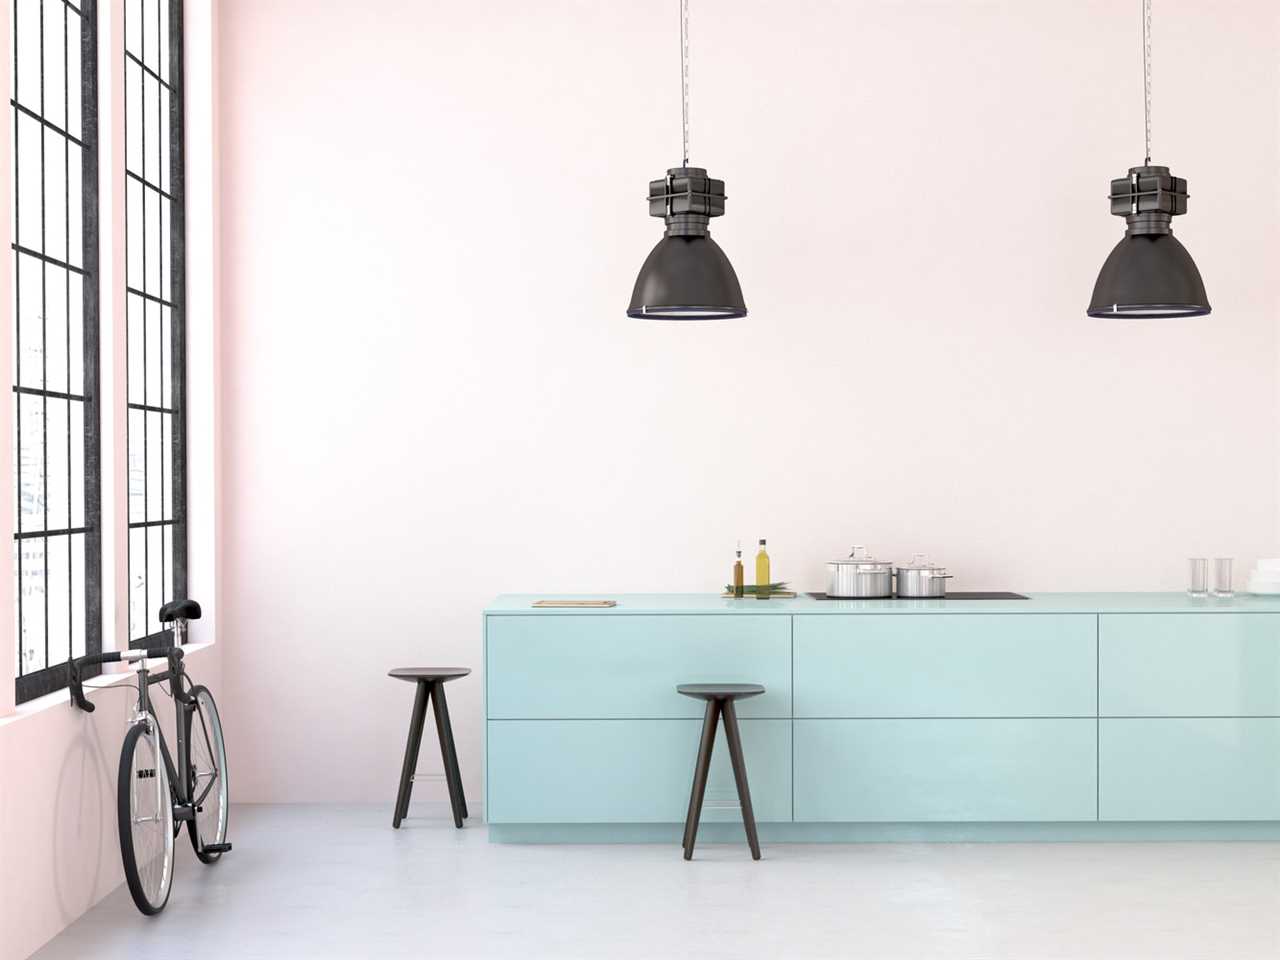 Kitchen Cabinet Design | Modular Kitchen